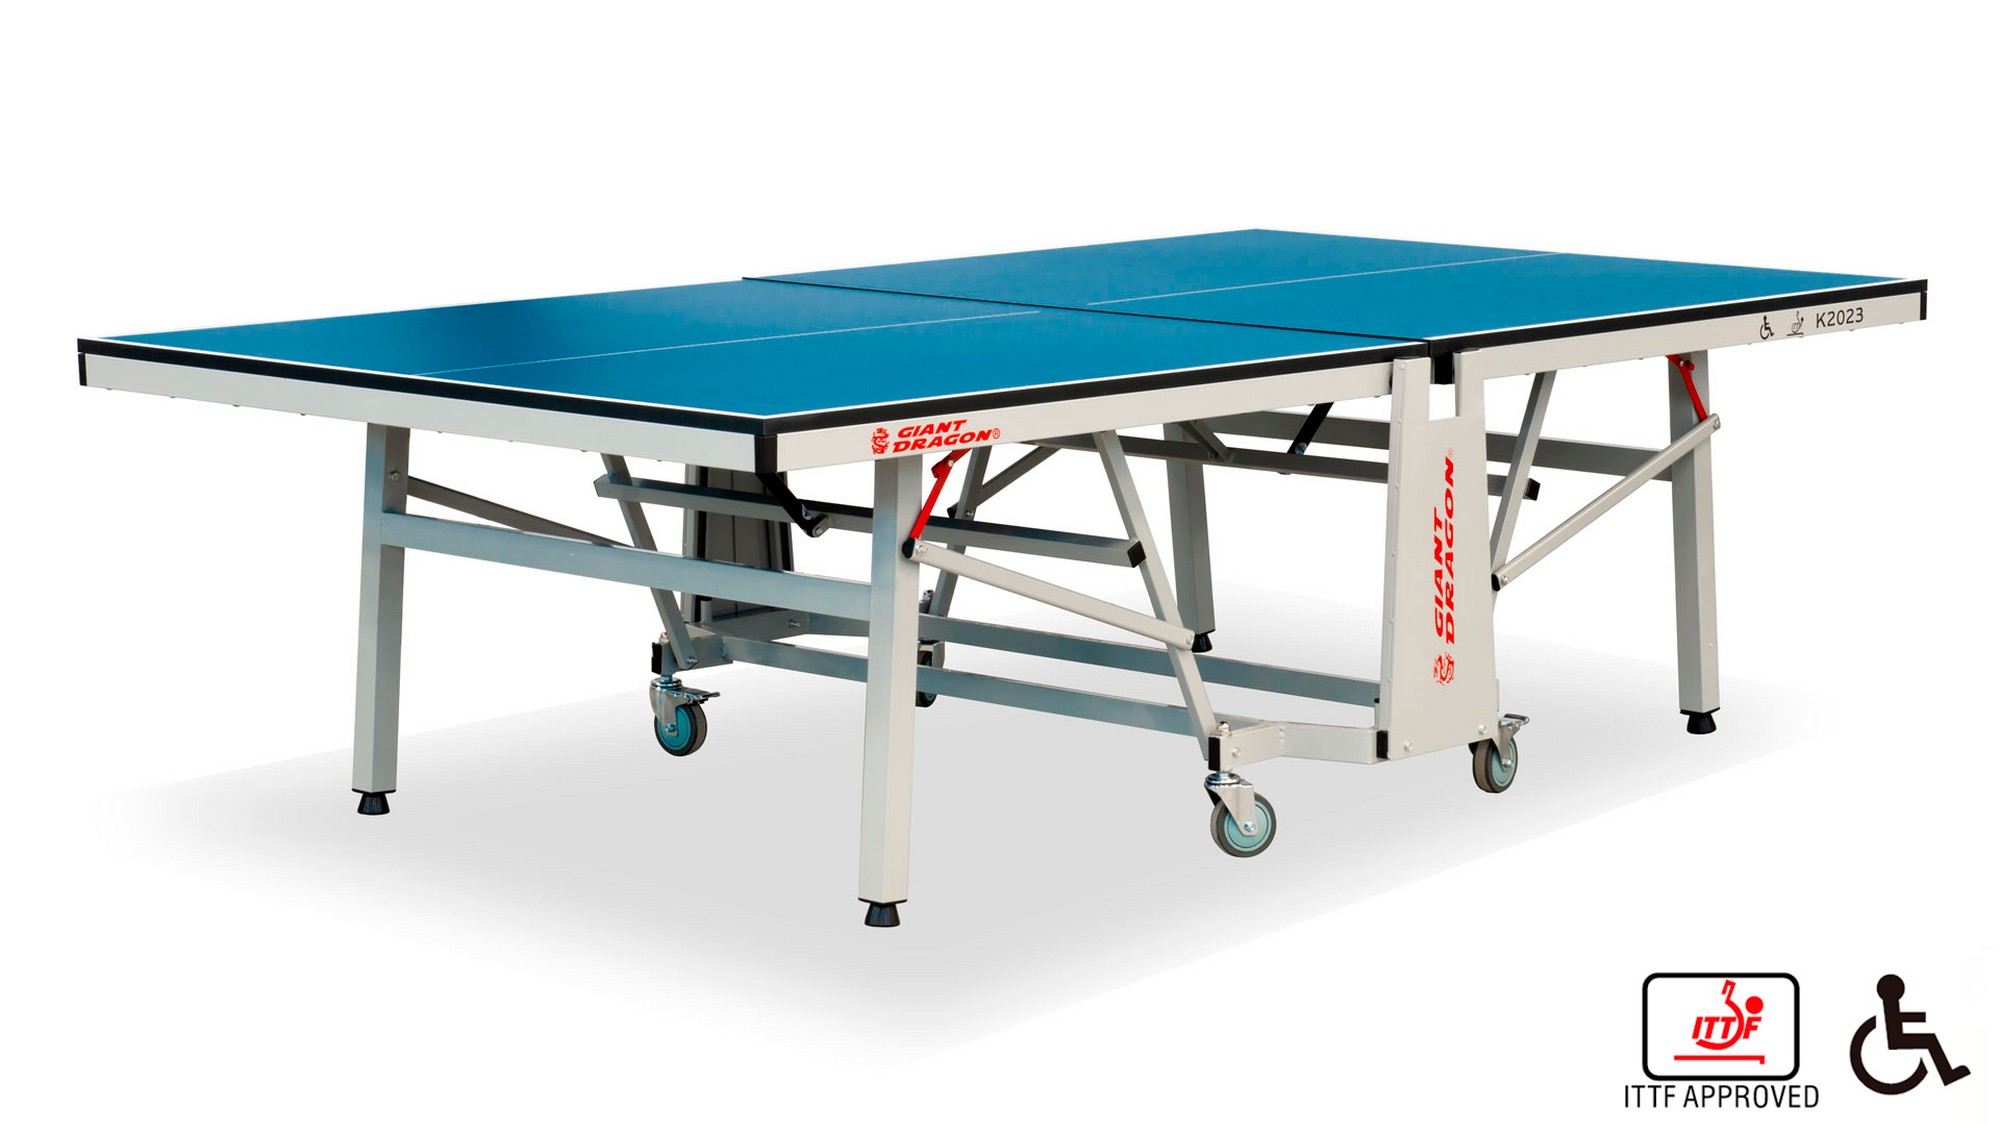 Теннисный стол складной для помещений K-2023 Giant Dragon 51.202.30.0 2000_1125